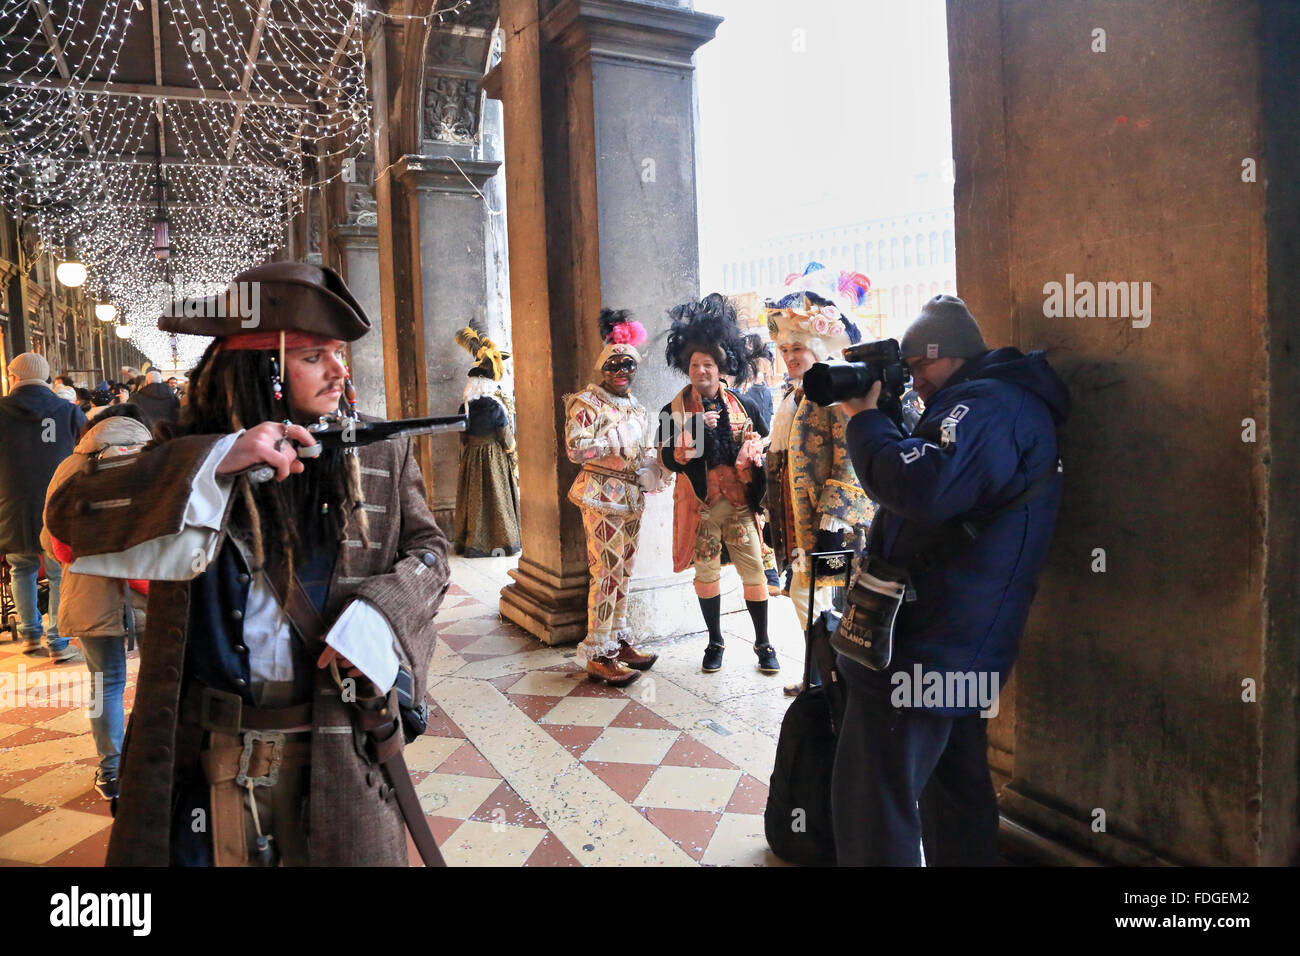 Pirates of the Caribbean at Carnevale di Venezia -  Venice Carnival 2016. Cannon against canon. Stock Photo